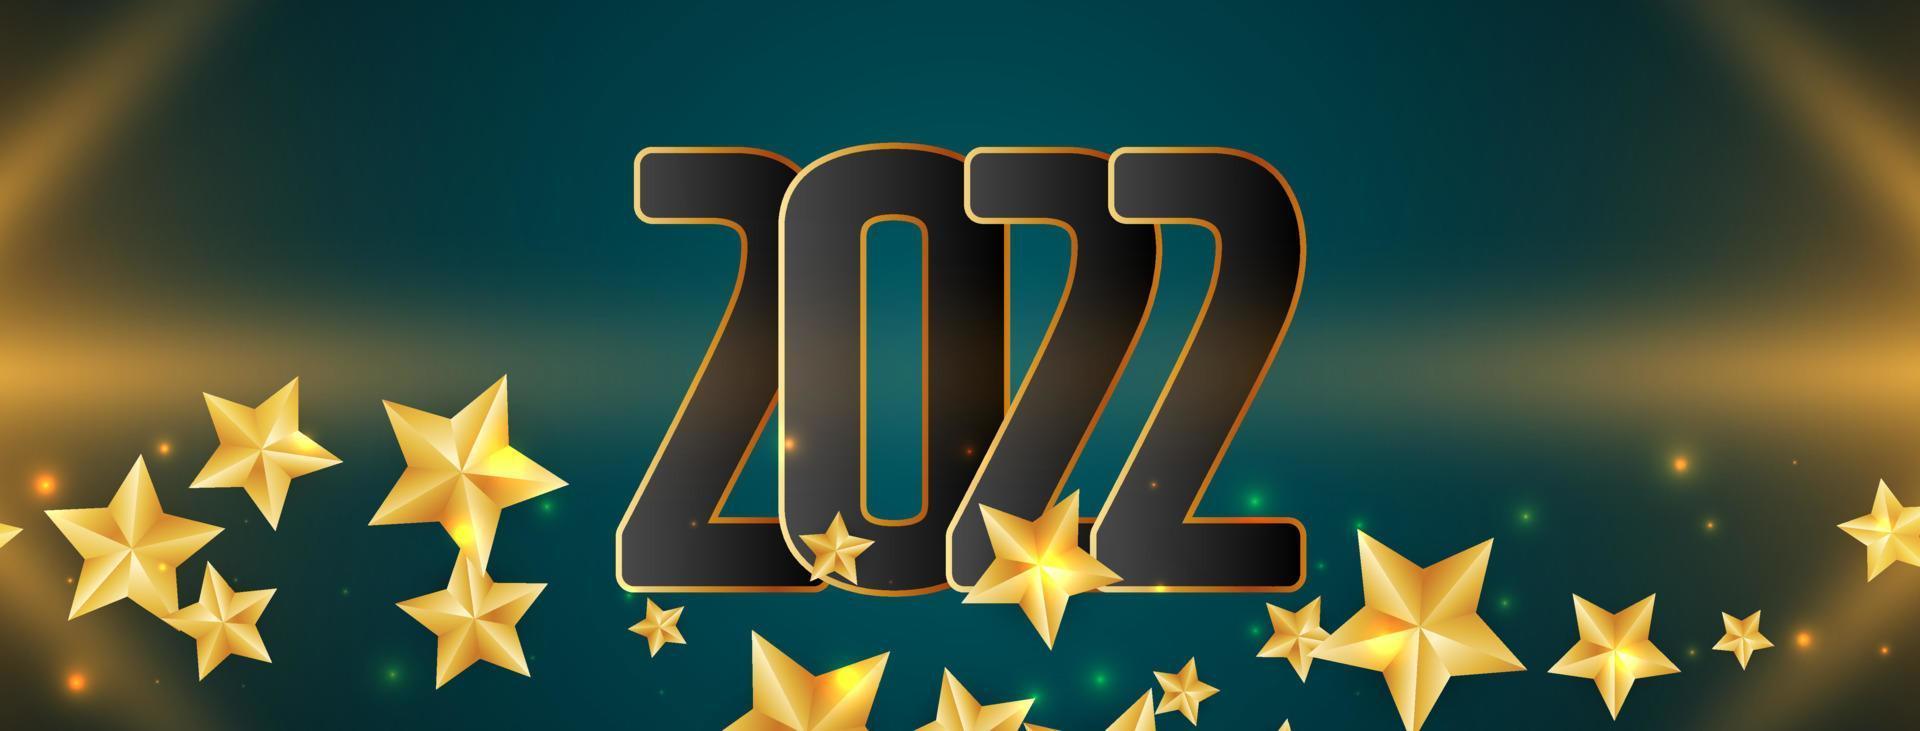 incandescente felice anno nuovo 2022 stelle banner design vettore